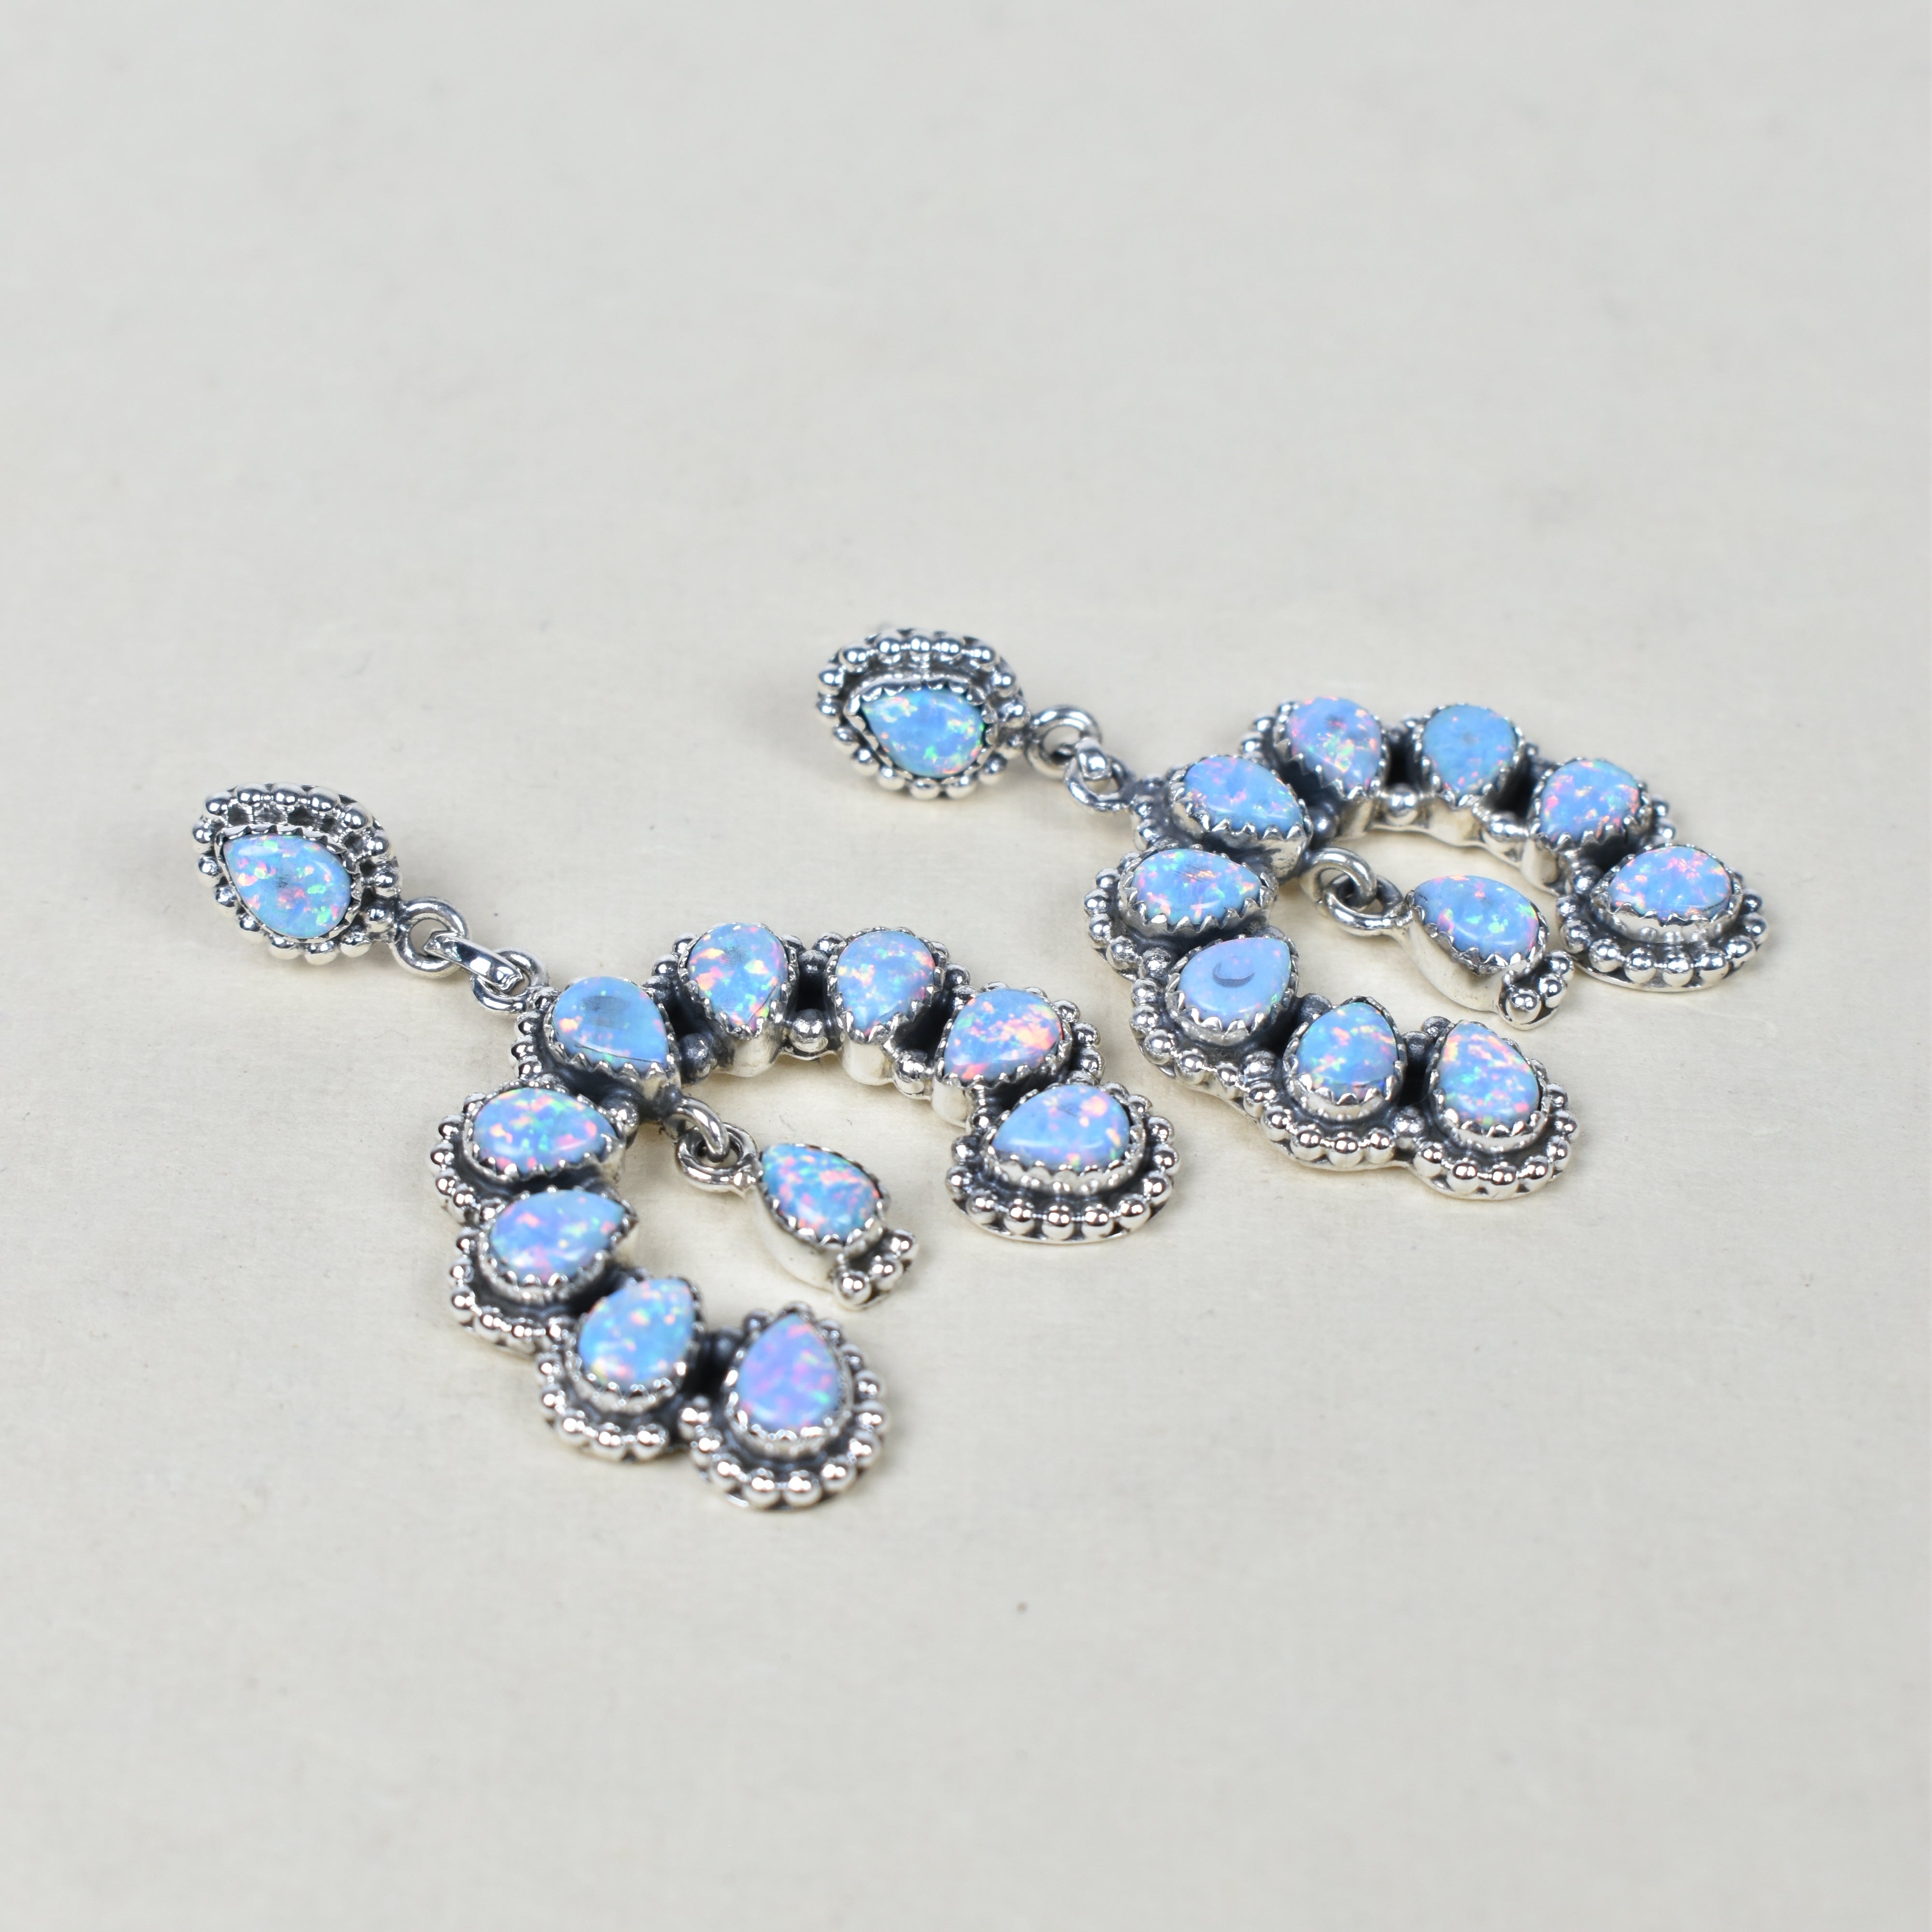 Double Luck Sterling Silver Earrings-Drop Earrings-Krush Kandy, Women's Online Fashion Boutique Located in Phoenix, Arizona (Scottsdale Area)